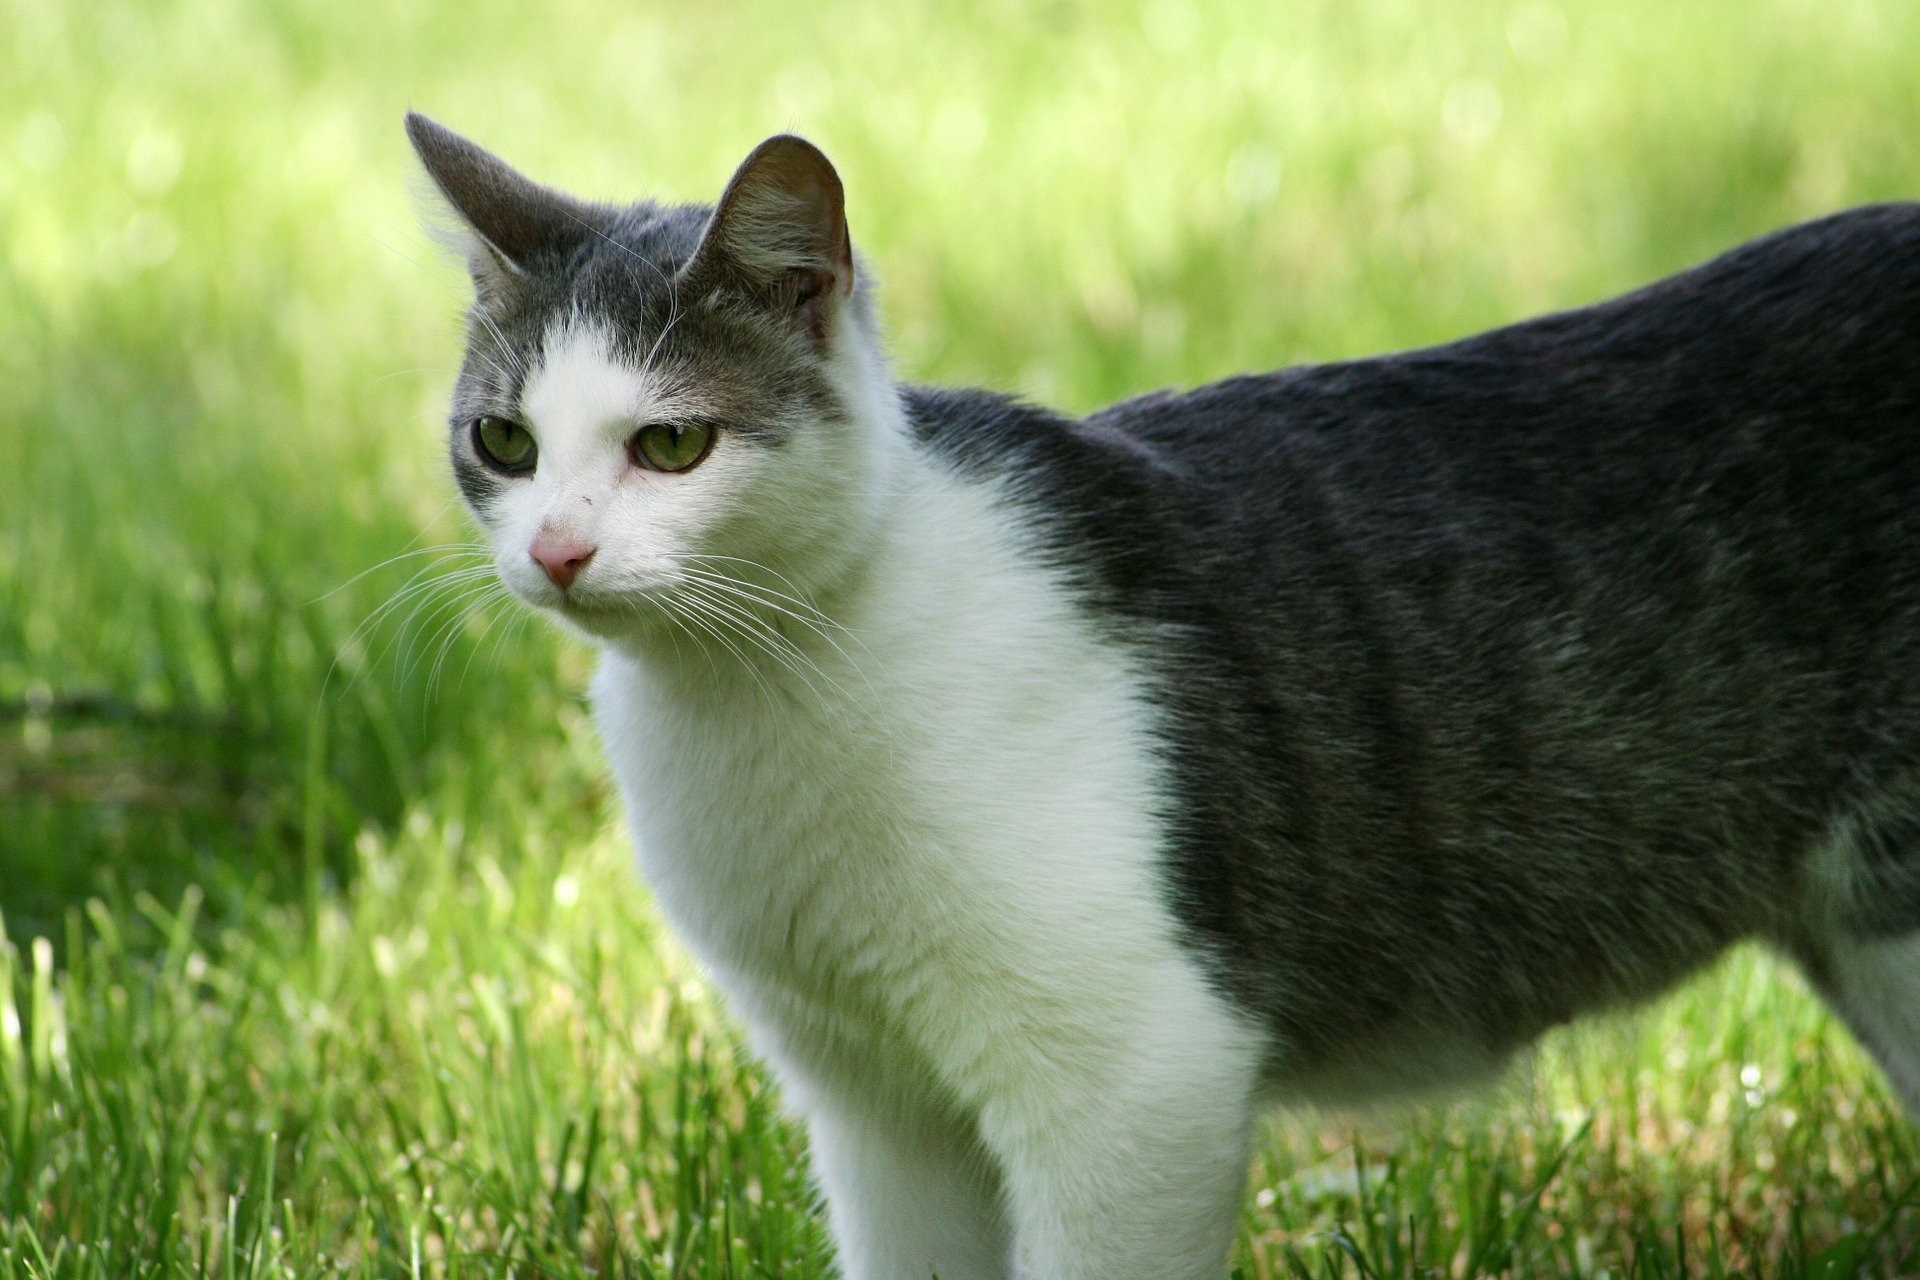 Vīrusu kaķi: iepazīstieties ar visu par kaķiem bez noteiktas šķirnes